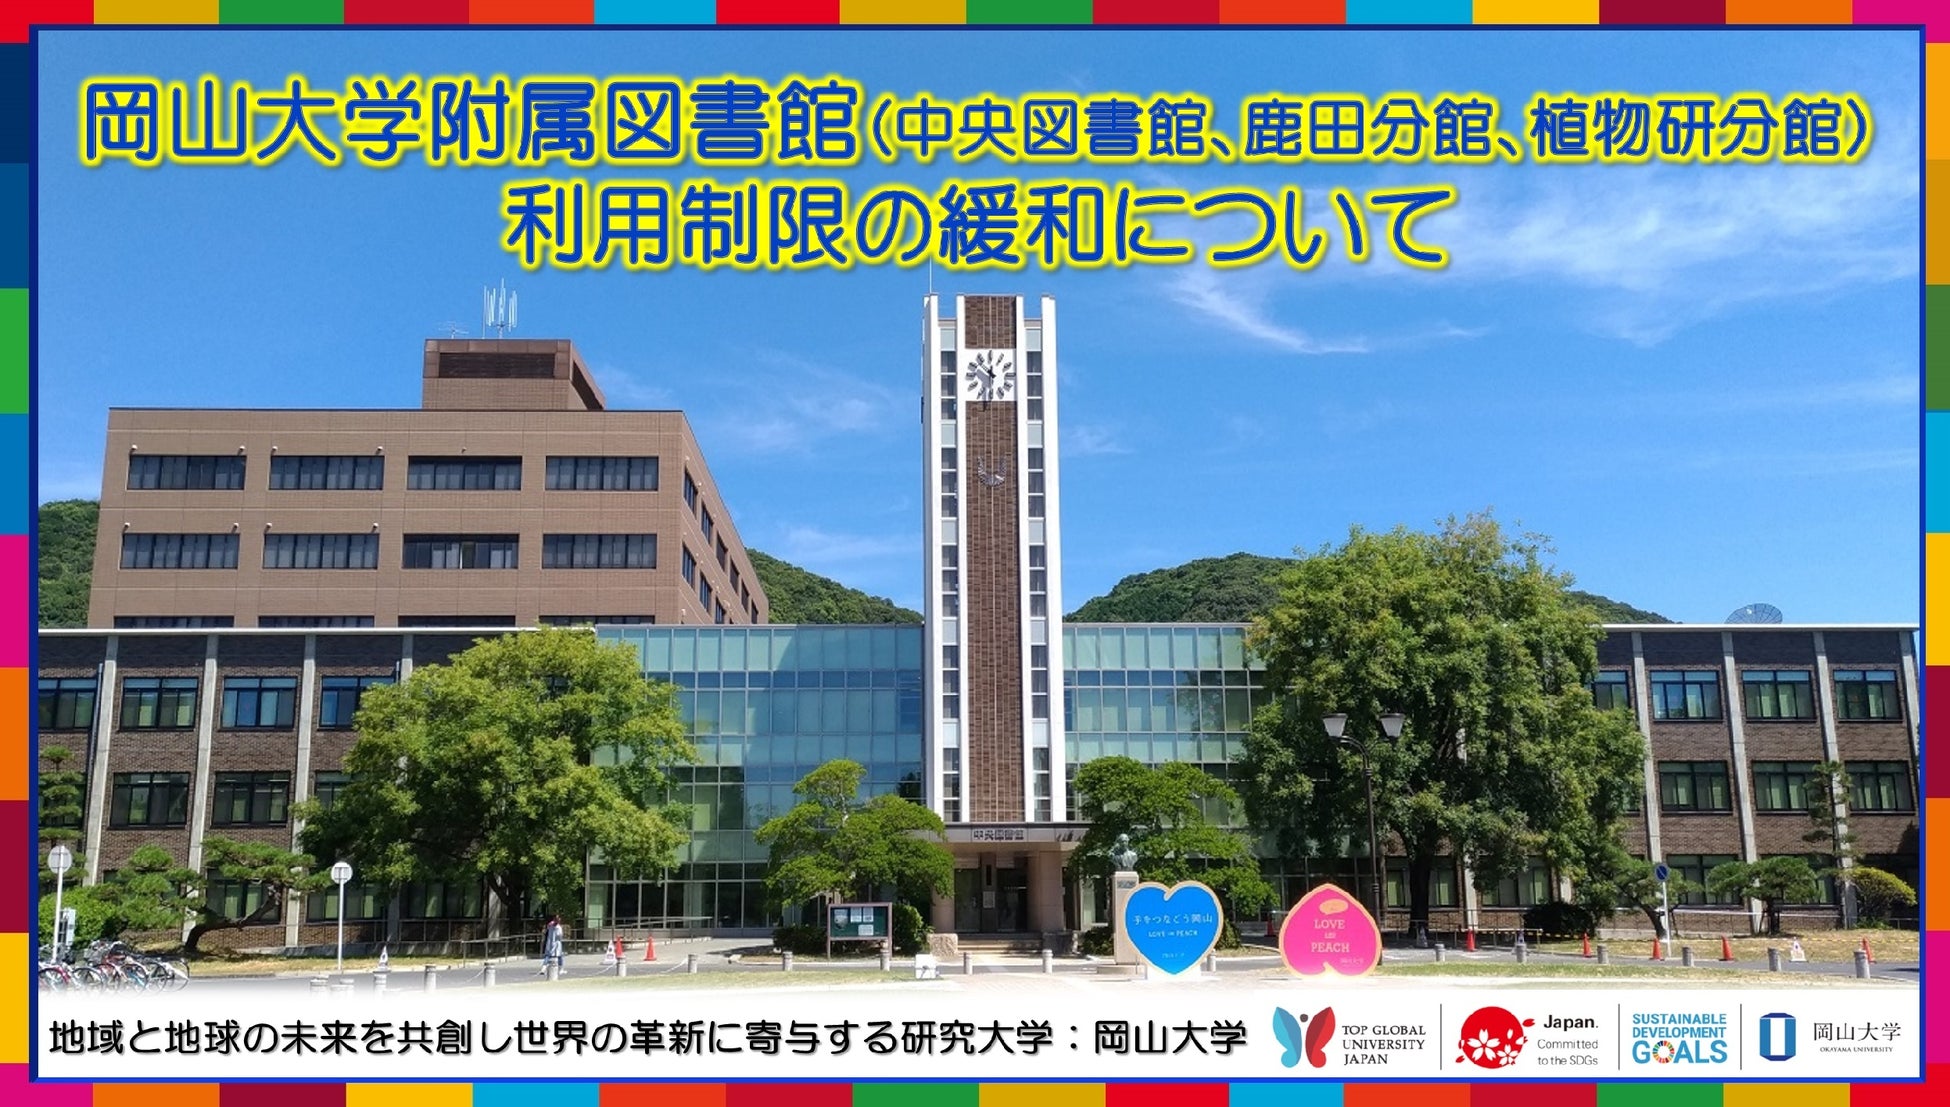 【岡山大学】岡山大学附属図書館各館の利用制限の緩和について